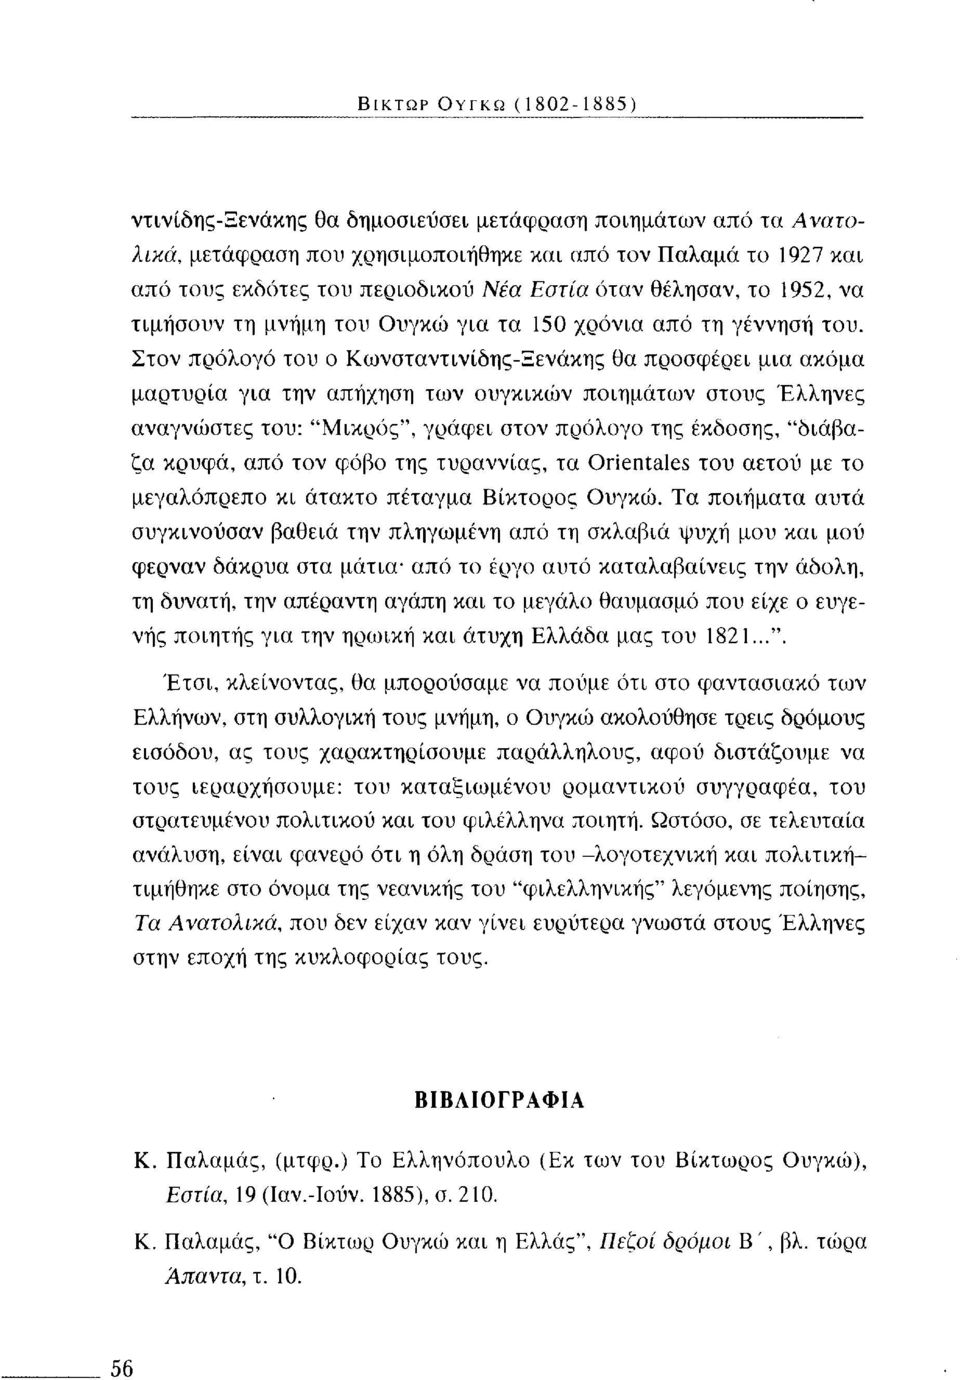 Στον πρόλογο του ο Κωνσταντινίδης-Ξενάκης θα προσφέρει μια ακόμα μαρτυρία για την απήχηση των ουγκικών ποιημάτων στους Έλληνες αναγνώστες του: "Μικρός", γράφει στον πρόλογο της έκδοσης, "διάβαζα